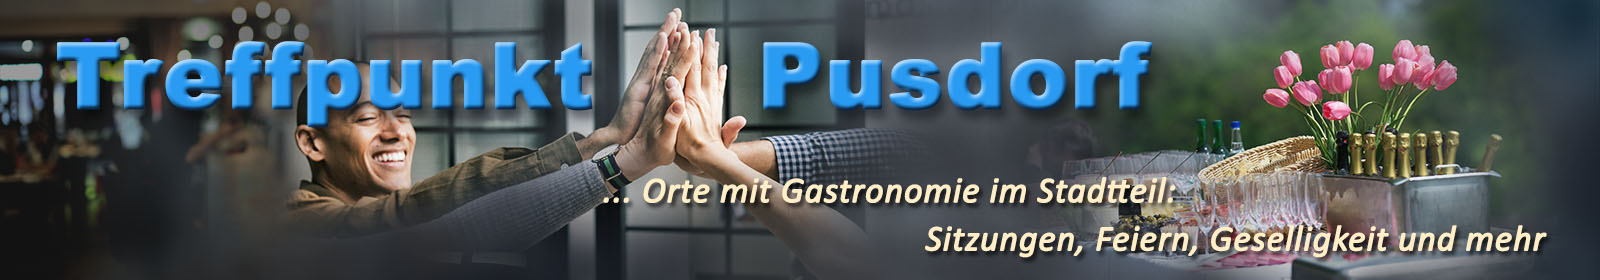 pusdorf.info – Foodbox Pusdorf